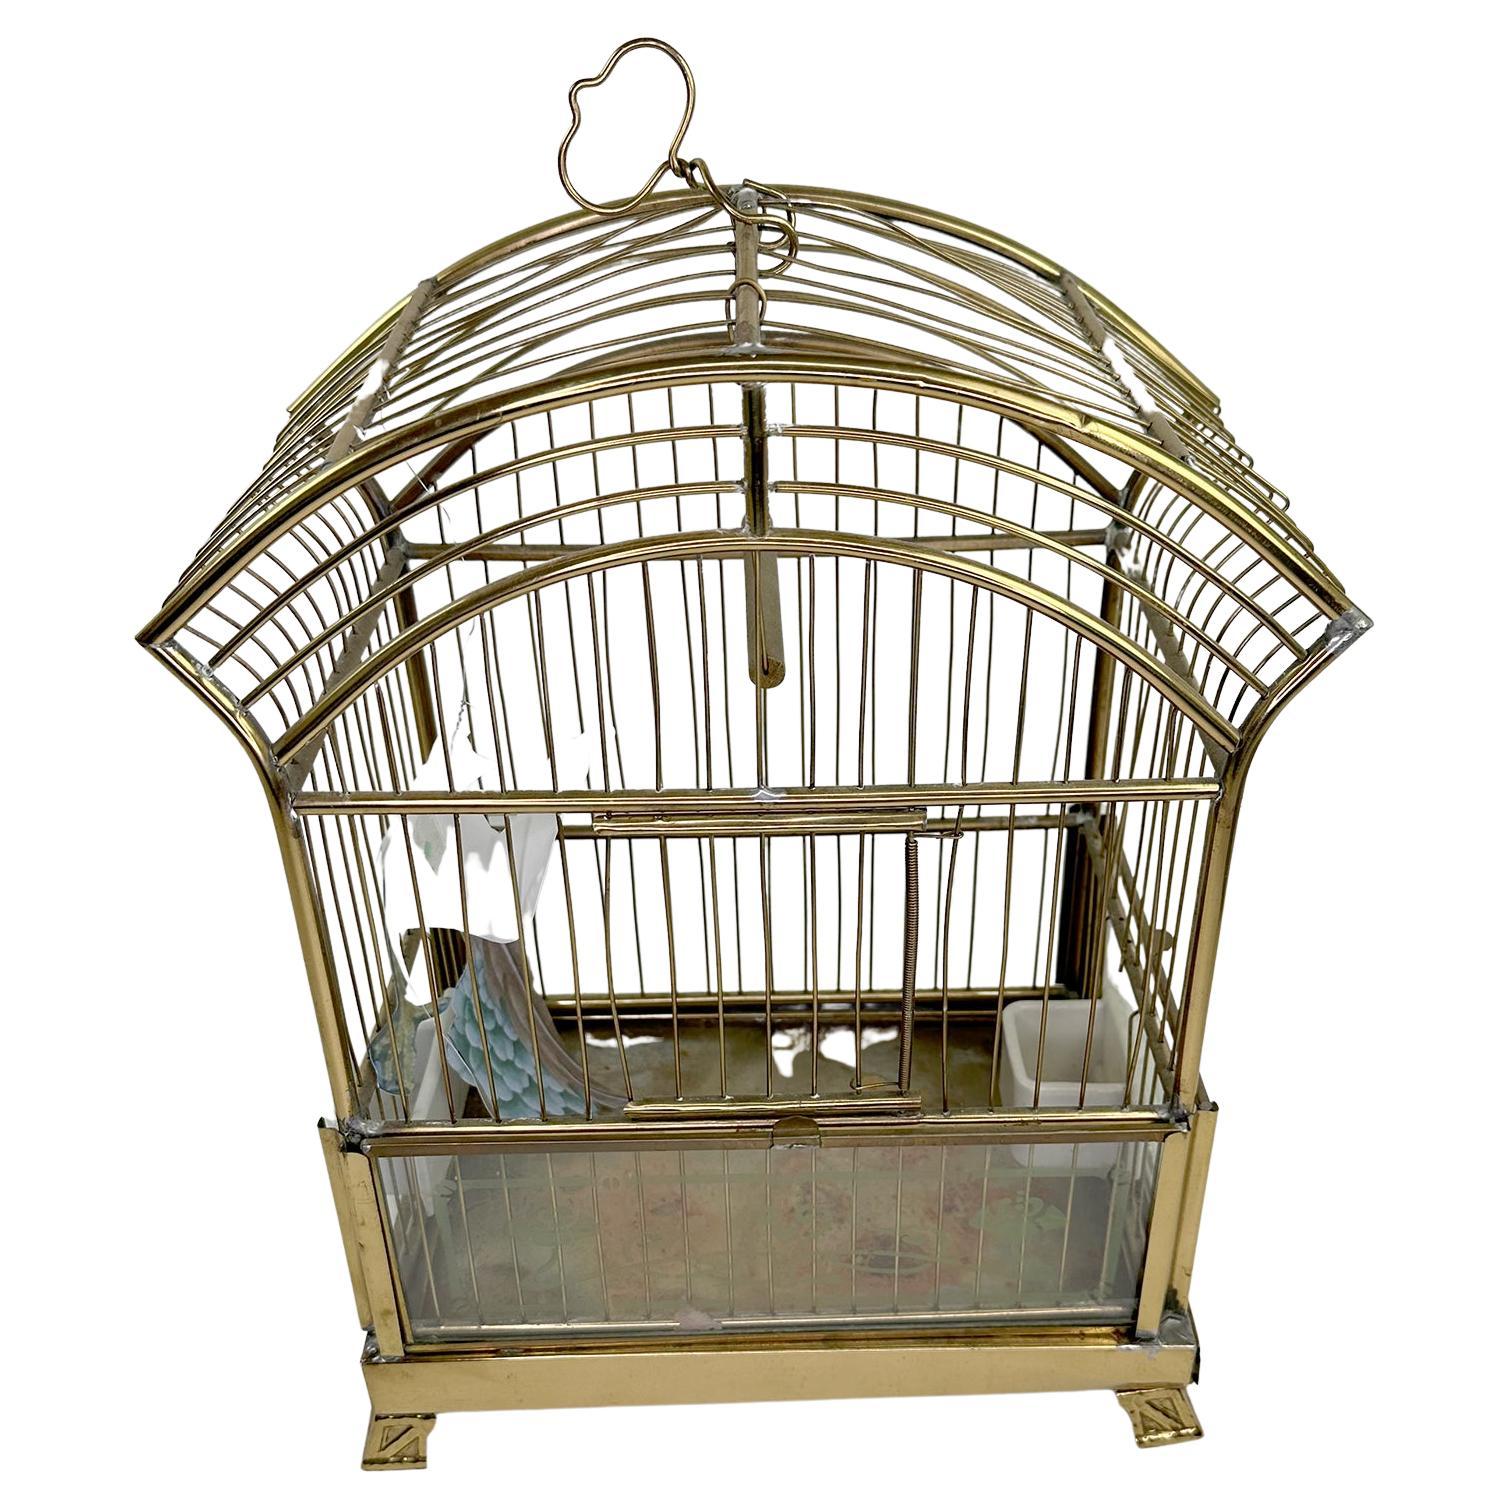 https://a.1stdibscdn.com/crown-vintage-birdcage-for-sale/f_19773/f_325076121675117872938/f_32507612_1675117873459_bg_processed.jpg